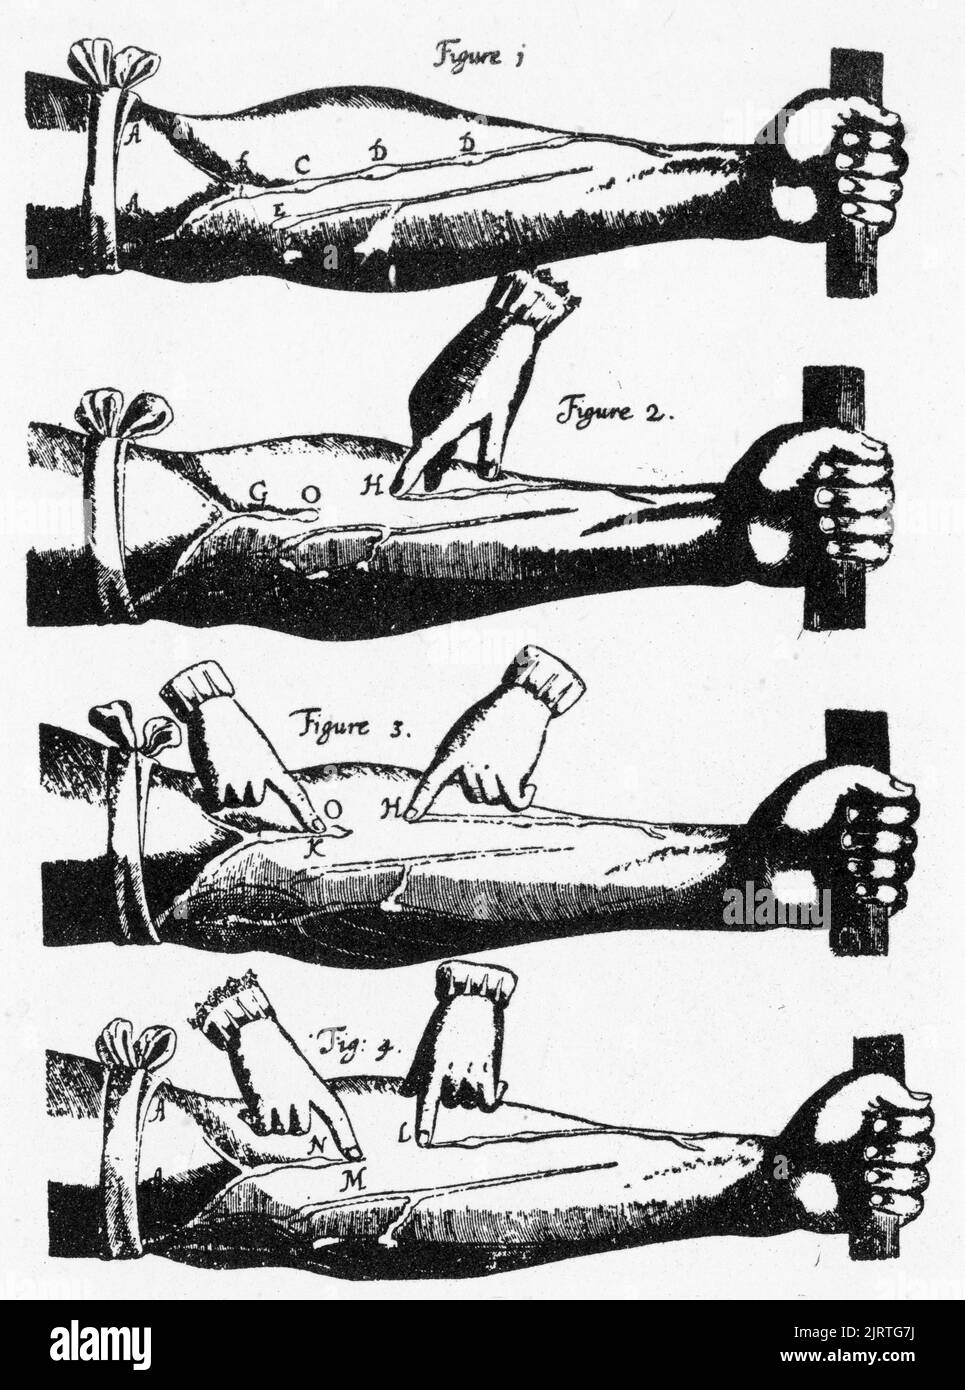 Diagramas que ilustran los experimentos de William Harvey en un brazo vendado, 1628. Exercitatio Anatomica de Motu CORDIS et sanguinis in Animalibus (Un ejercicio anatómico sobre el movimiento del corazón y la sangre en los seres vivos), comúnmente llamado De Motu CORDIS, es el trabajo más conocido del médico William Harvey (1578-1657), que se publicó por primera vez en 1628 y estableció la circulación de la sangre por todo el cuerpo. Foto de stock